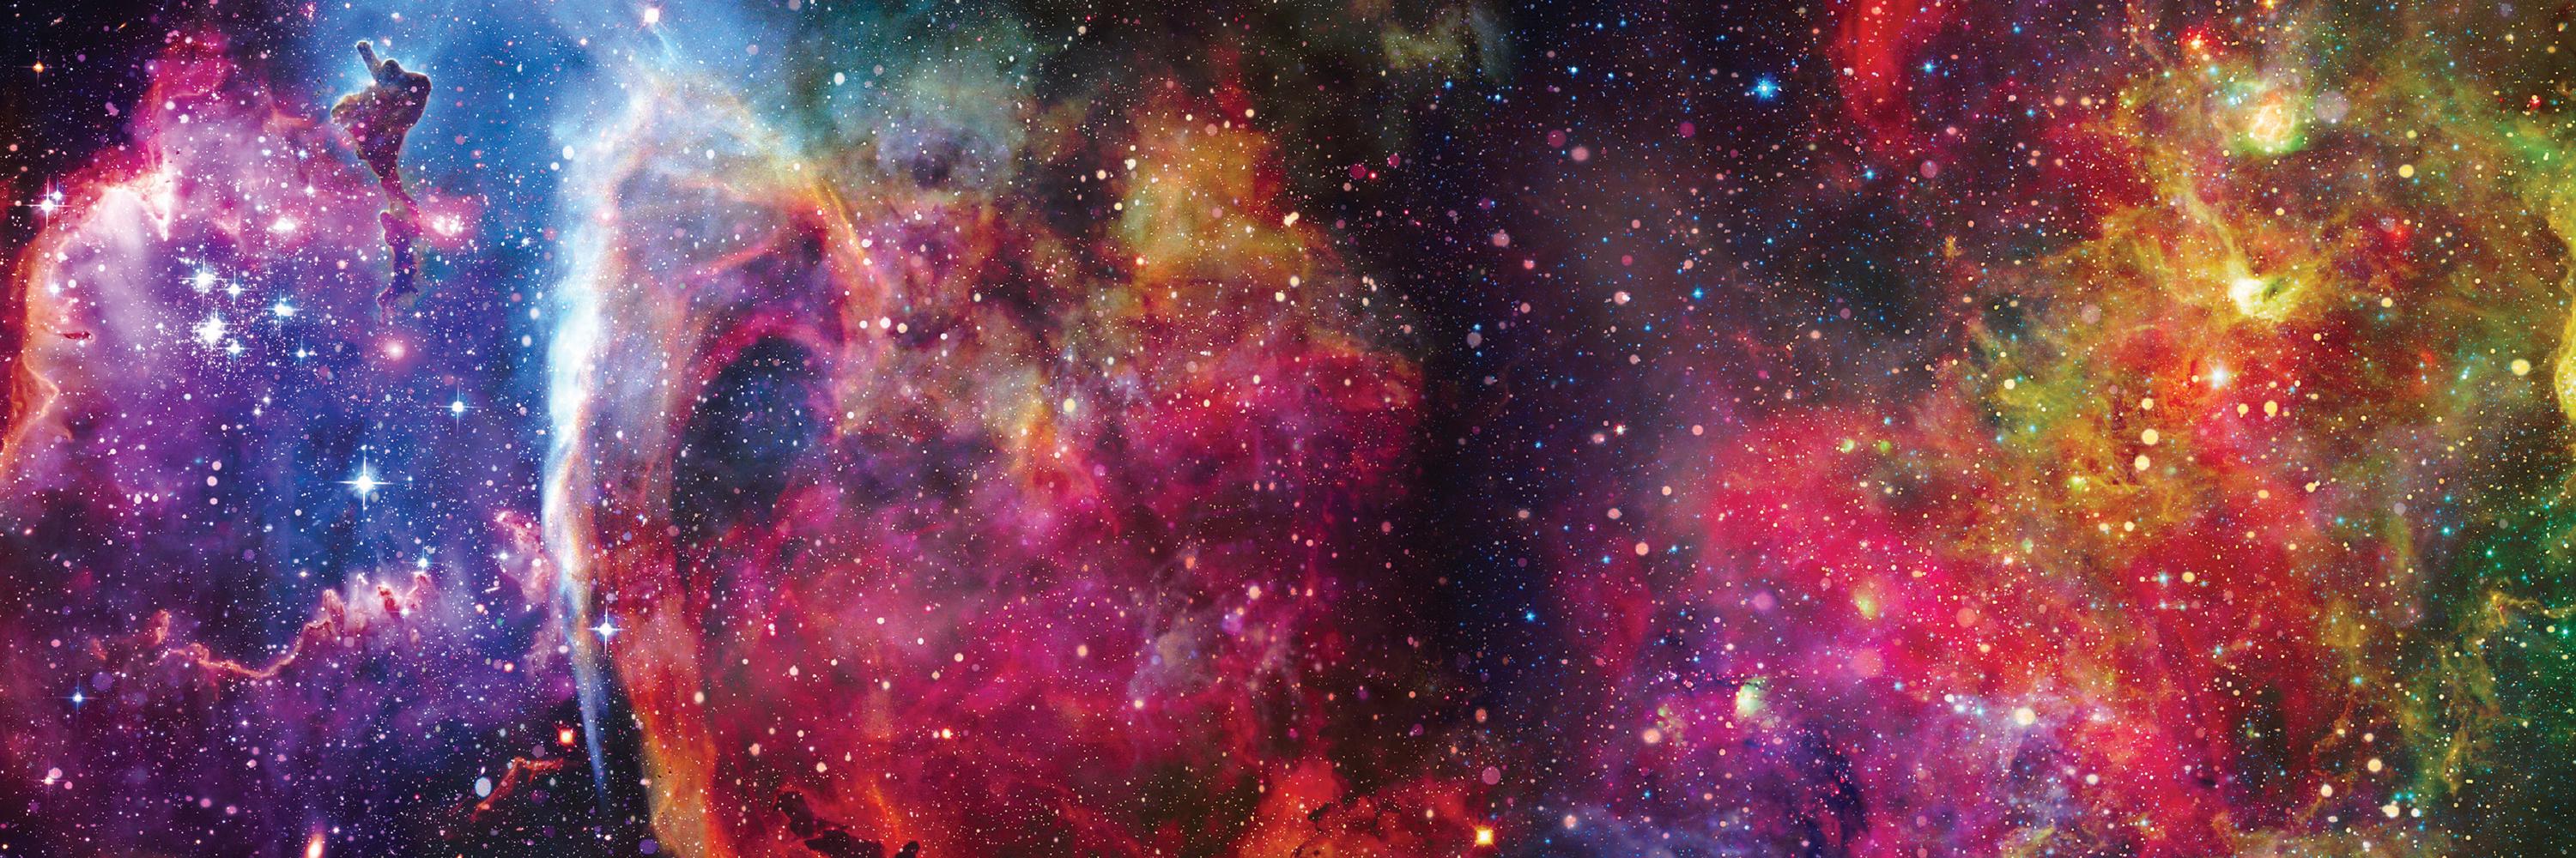 Пазли тришарові Interdruk Galaxy 1, панорамні, 1000 елементів - фото 3